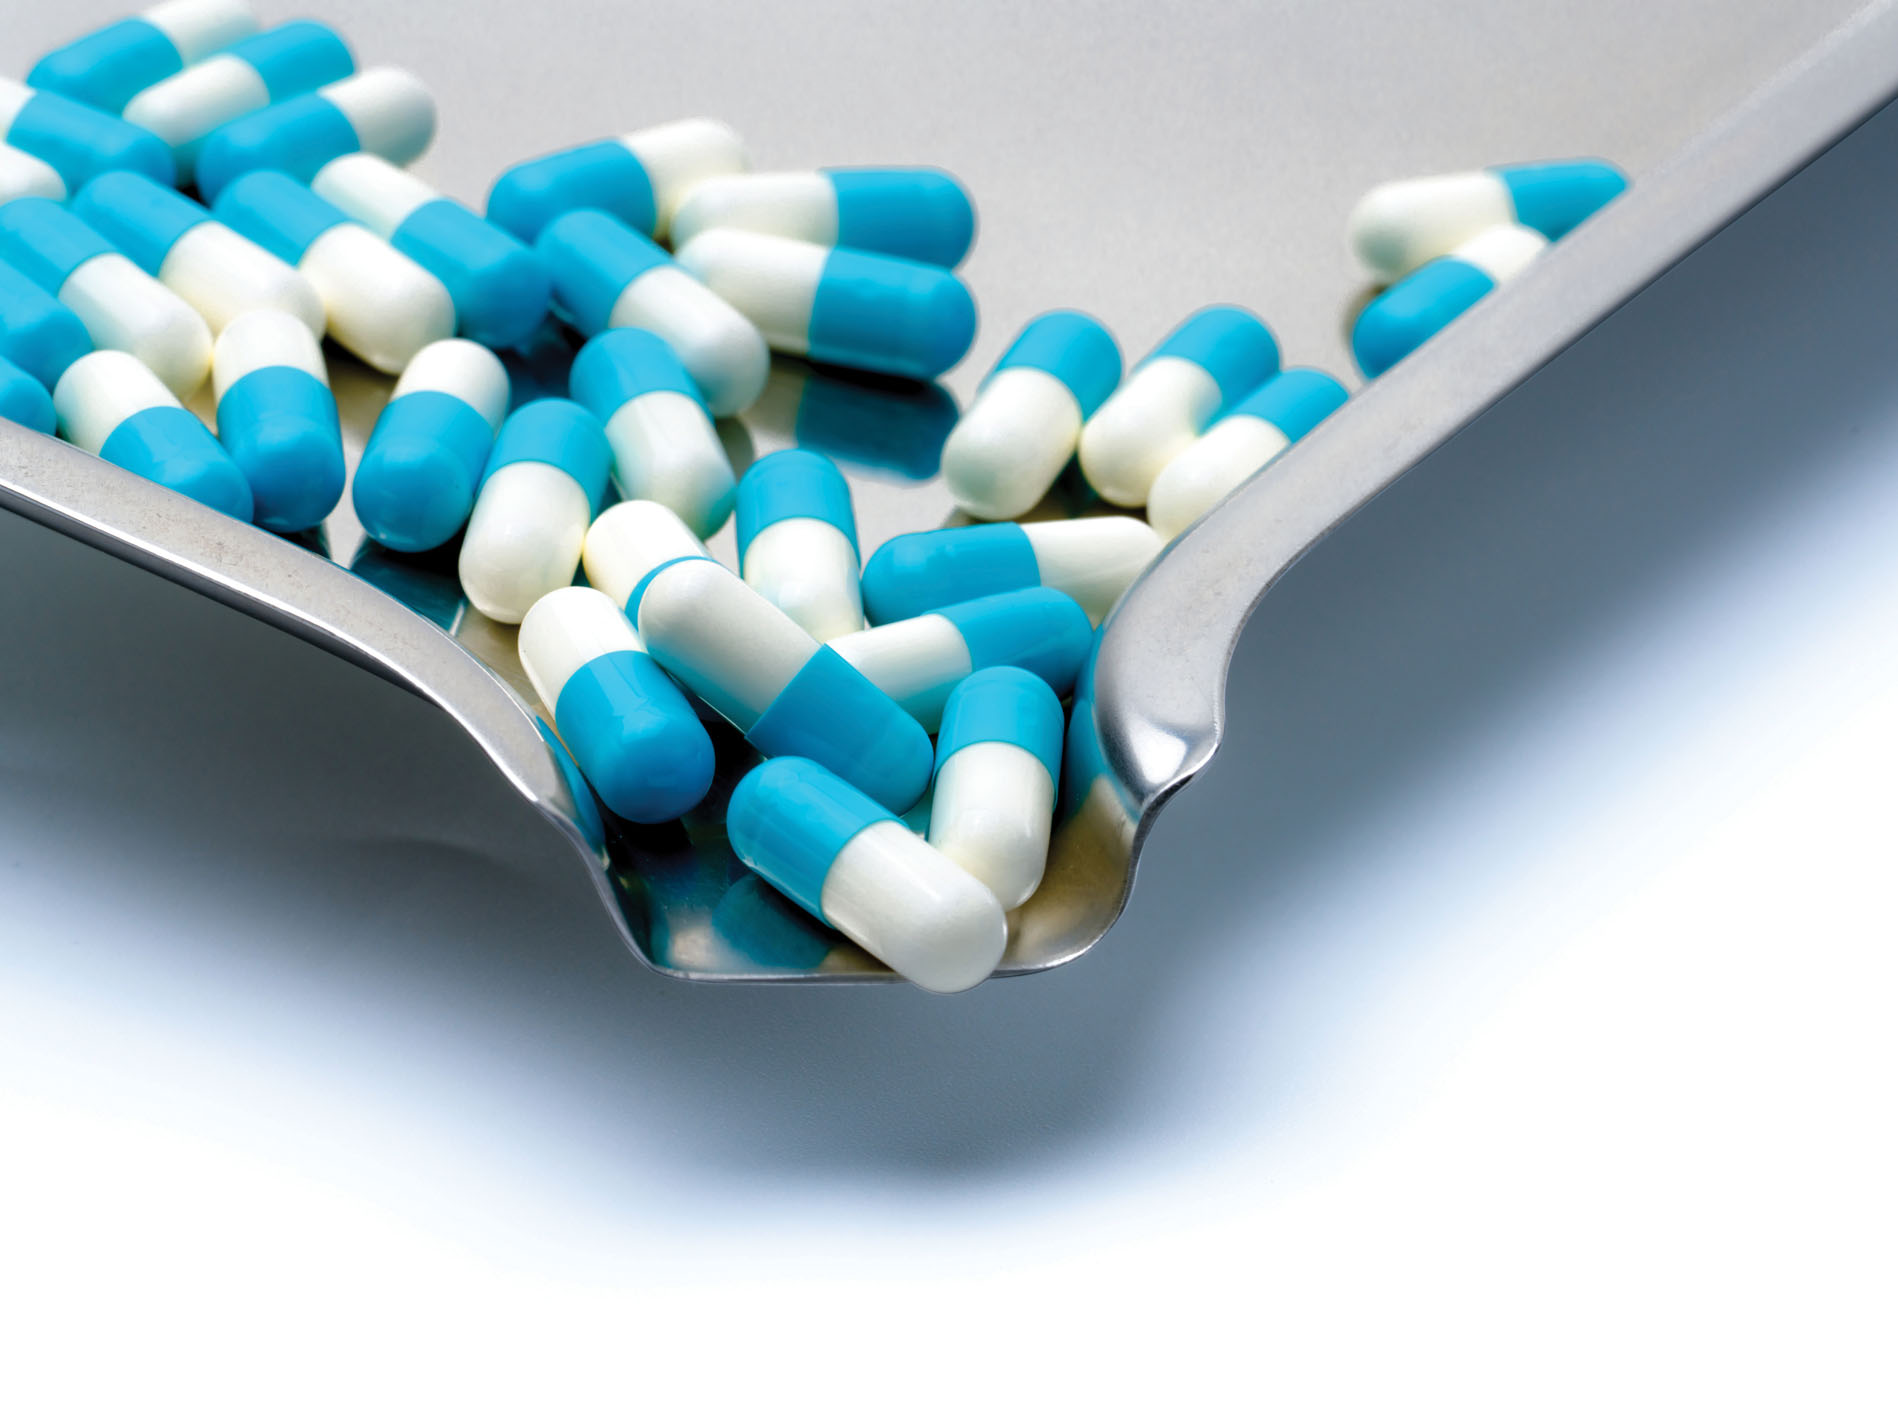 胶囊口服剂型:在整个药品生命周期内提供益处